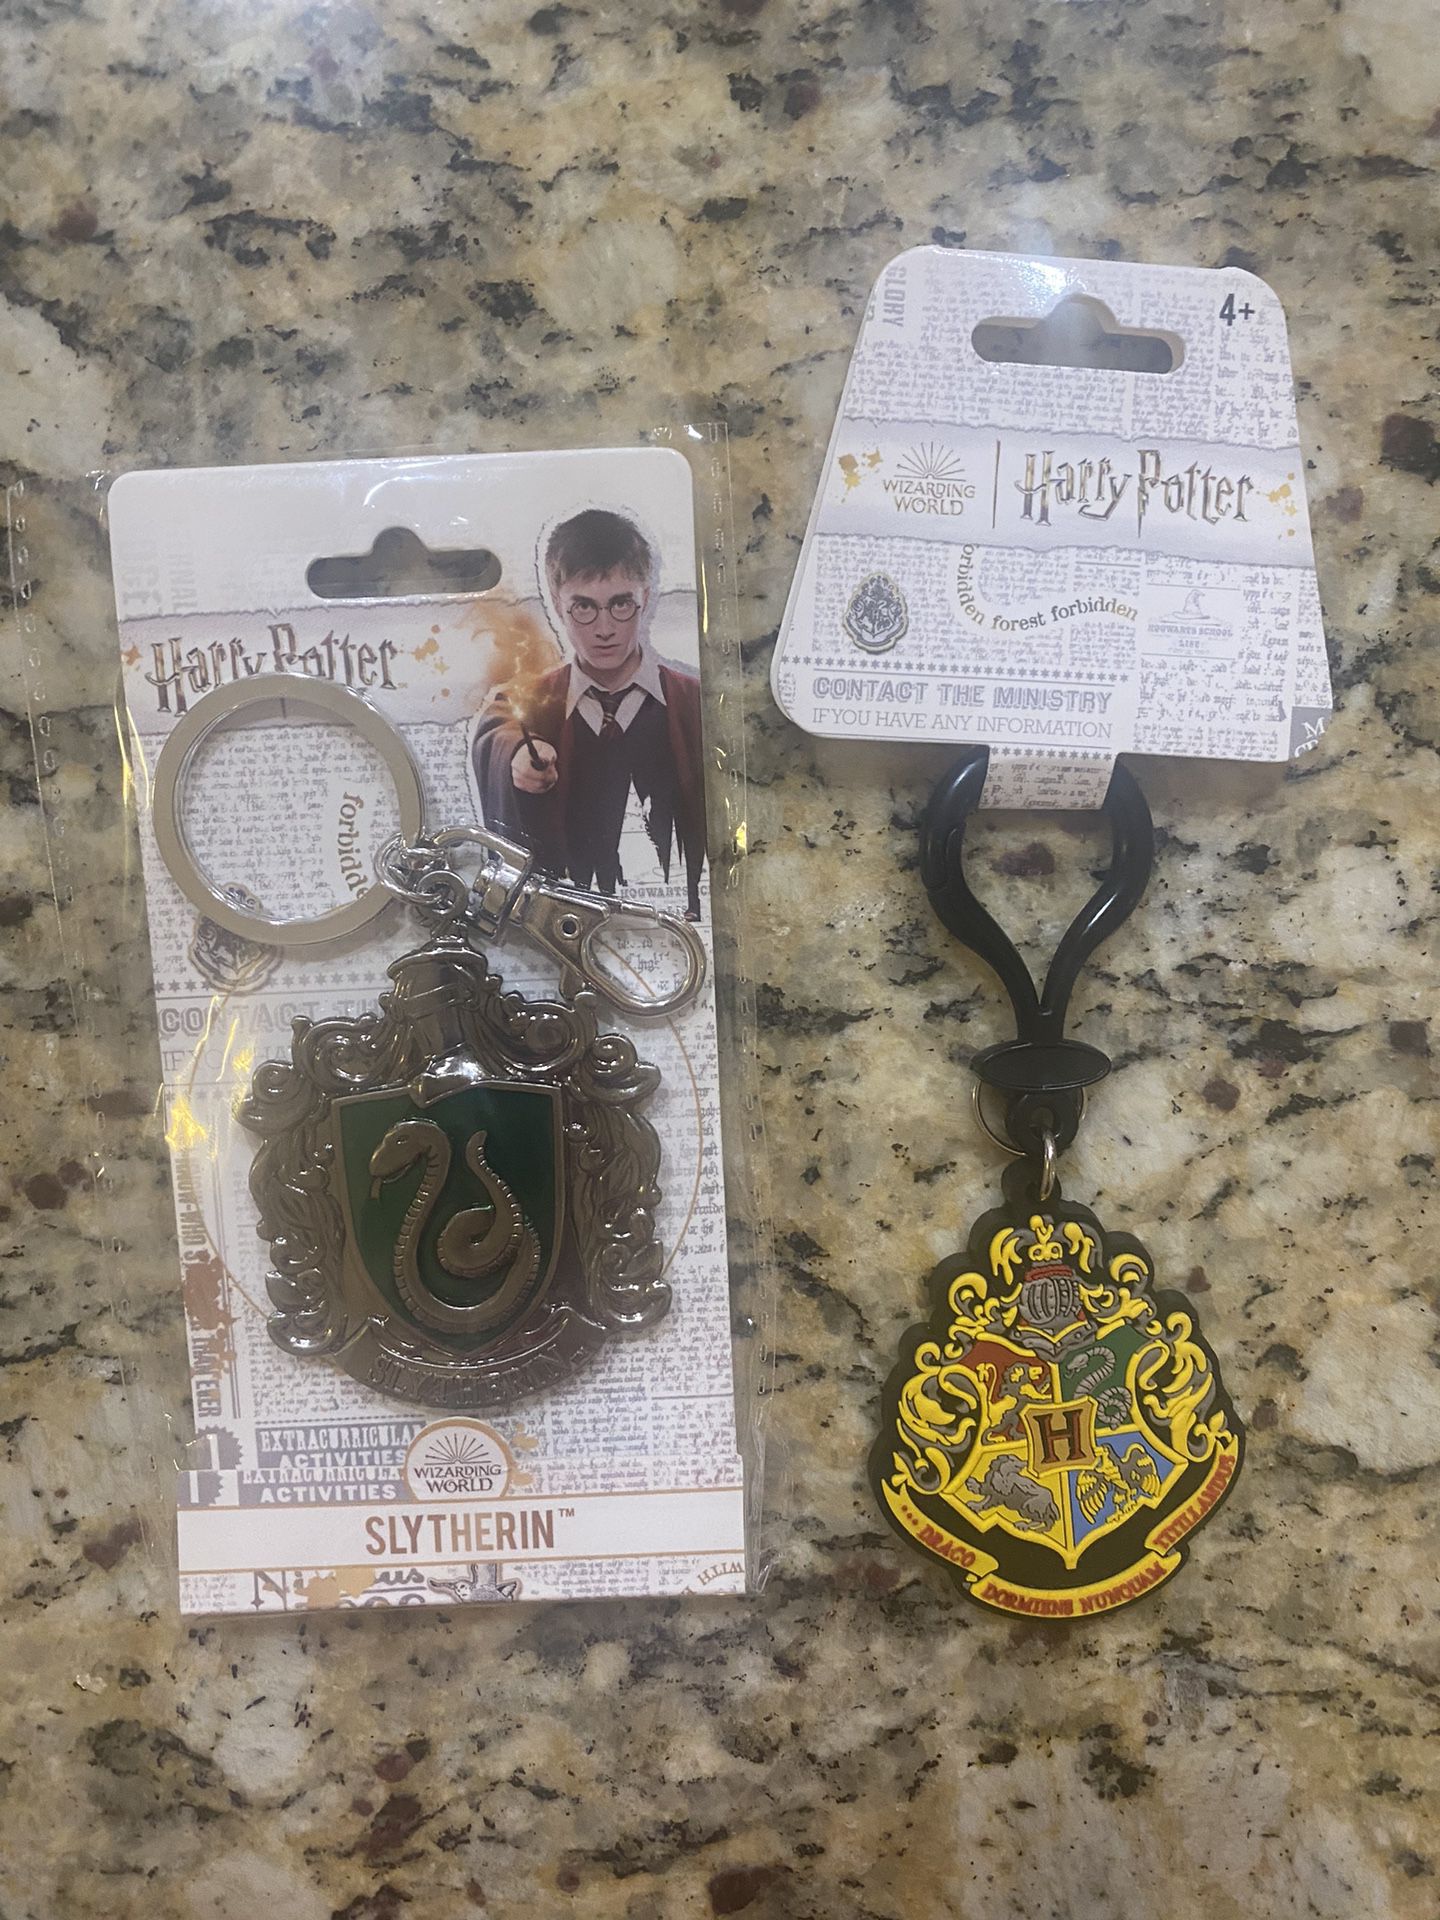 2 New Harry Potter Keychains, Slytherin